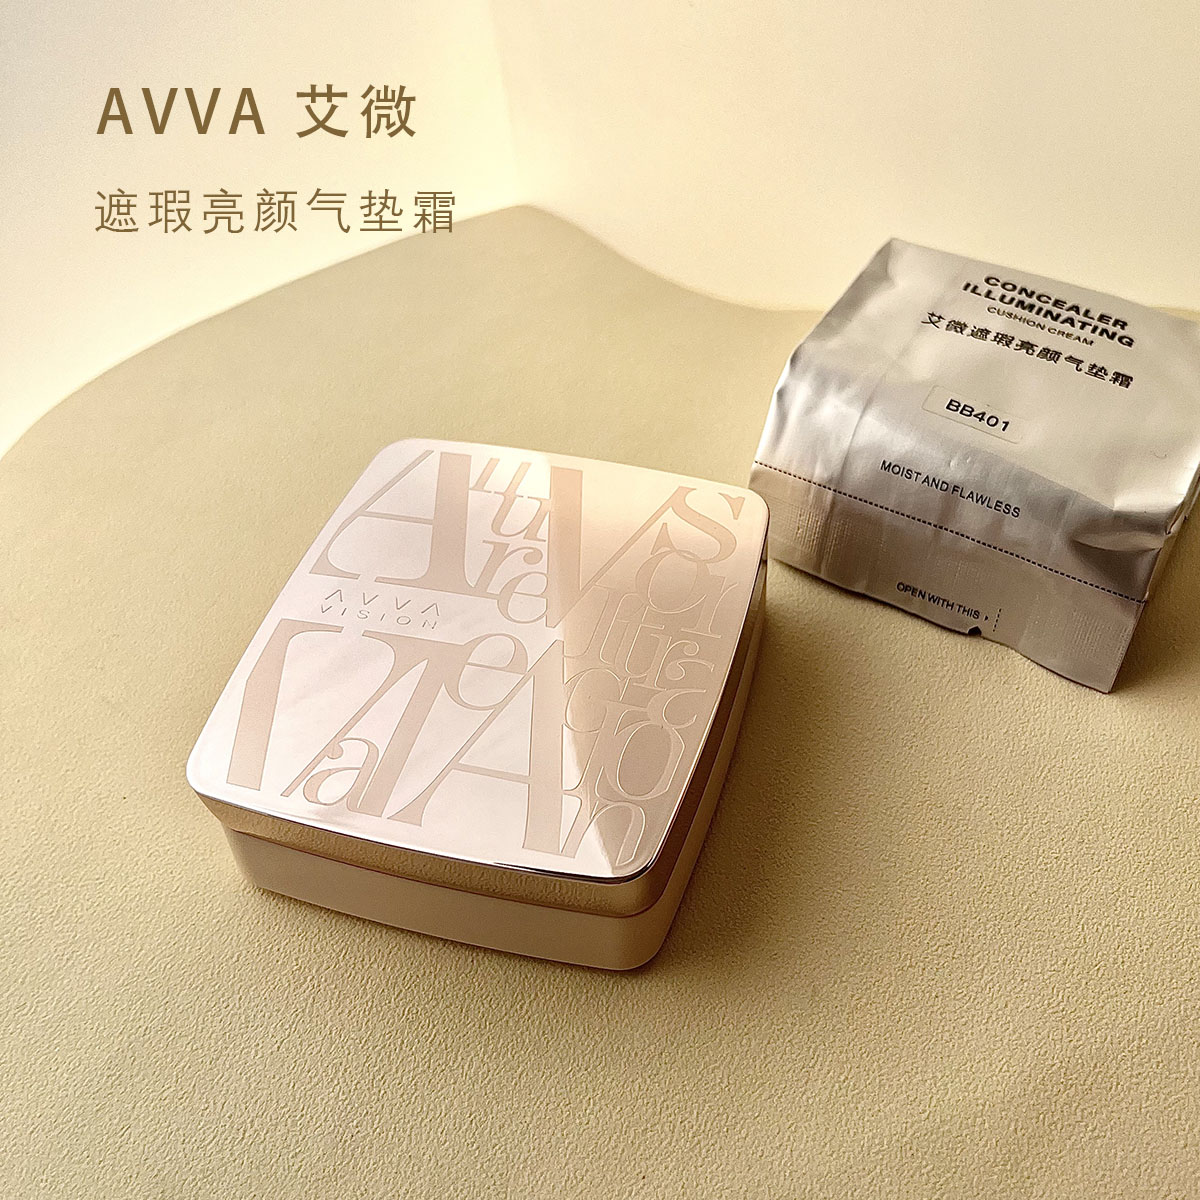 AVVA艾微遮瑕亮颜气垫BB霜轻薄提亮补水保湿持久不脱妆自然不卡粉